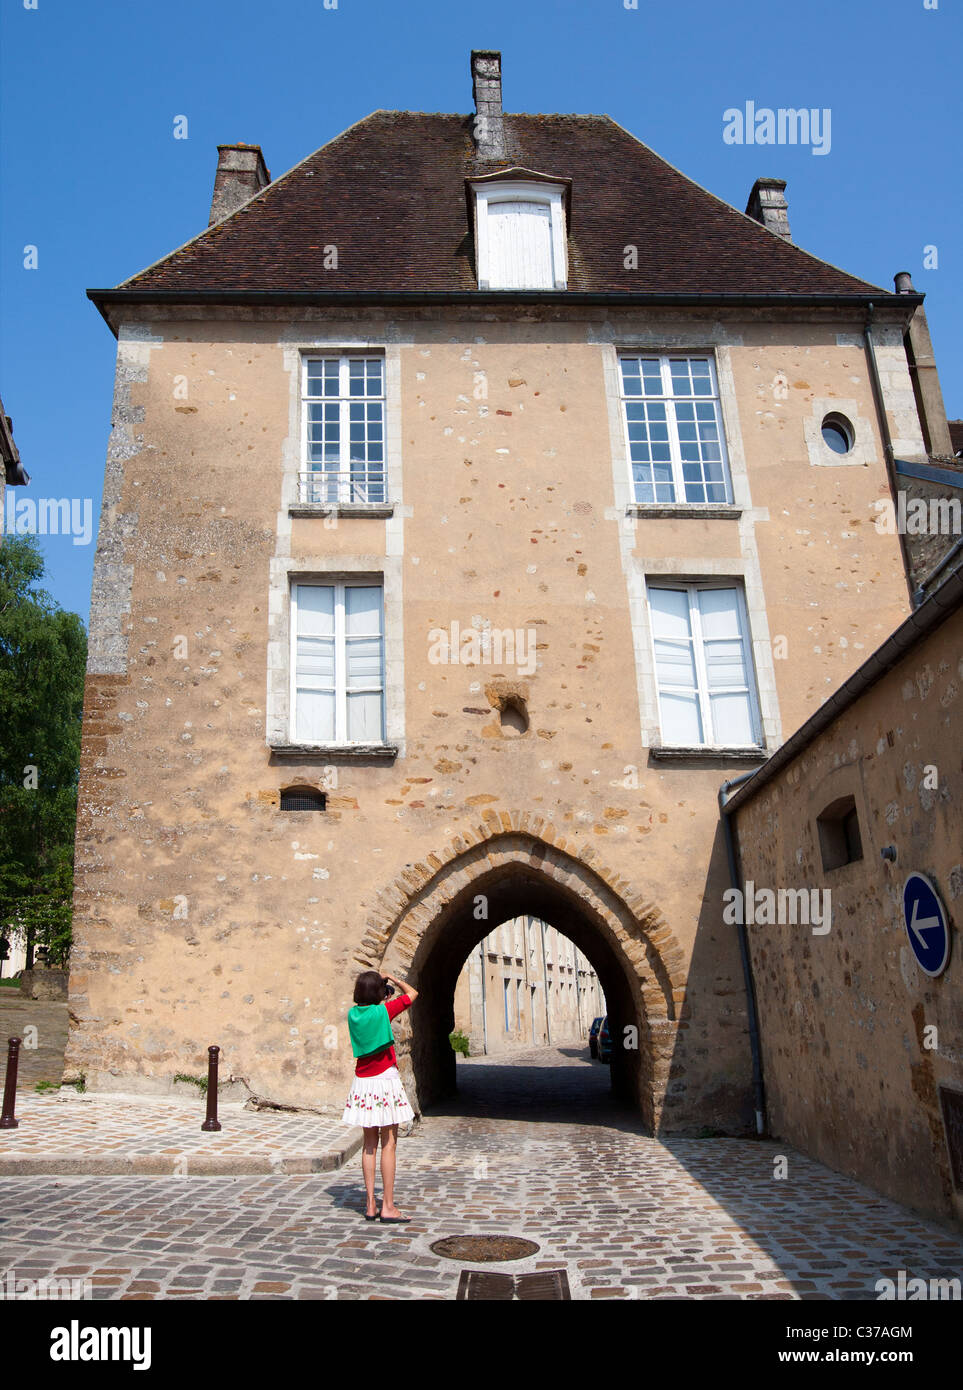 Femme photographe touristique. Arche médiévale, Mortagne au Perche, Orne, France, Europe, Basse-Normandy Banque D'Images